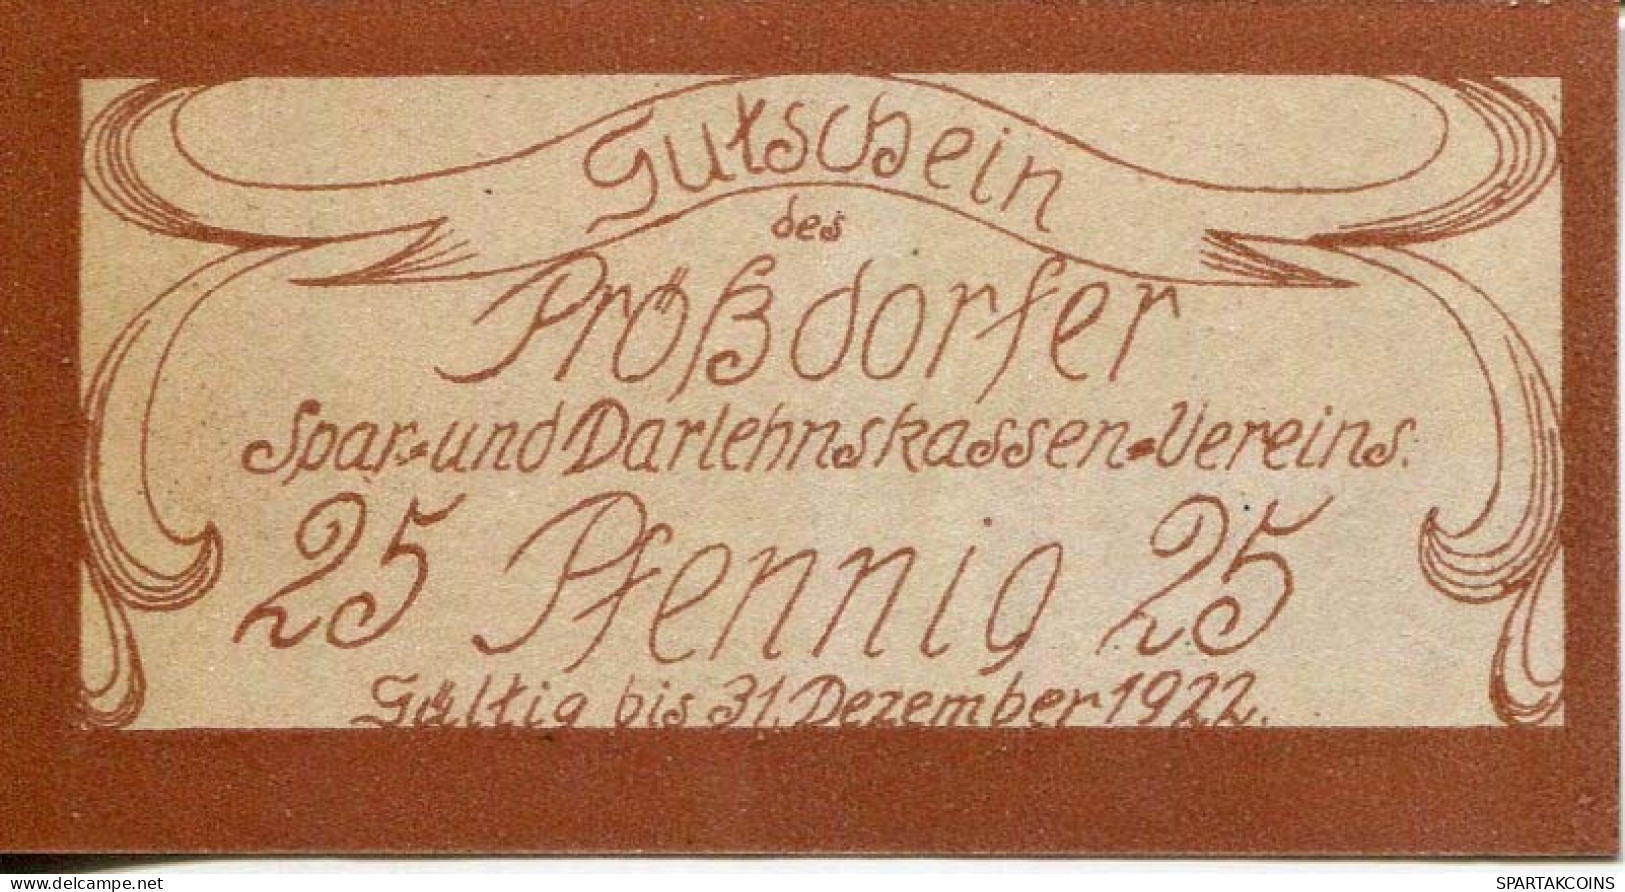 25 PFENNIG 1922 Stadt PRoSSDORF Thuringia DEUTSCHLAND Notgeld Papiergeld Banknote #PL924 - Lokale Ausgaben